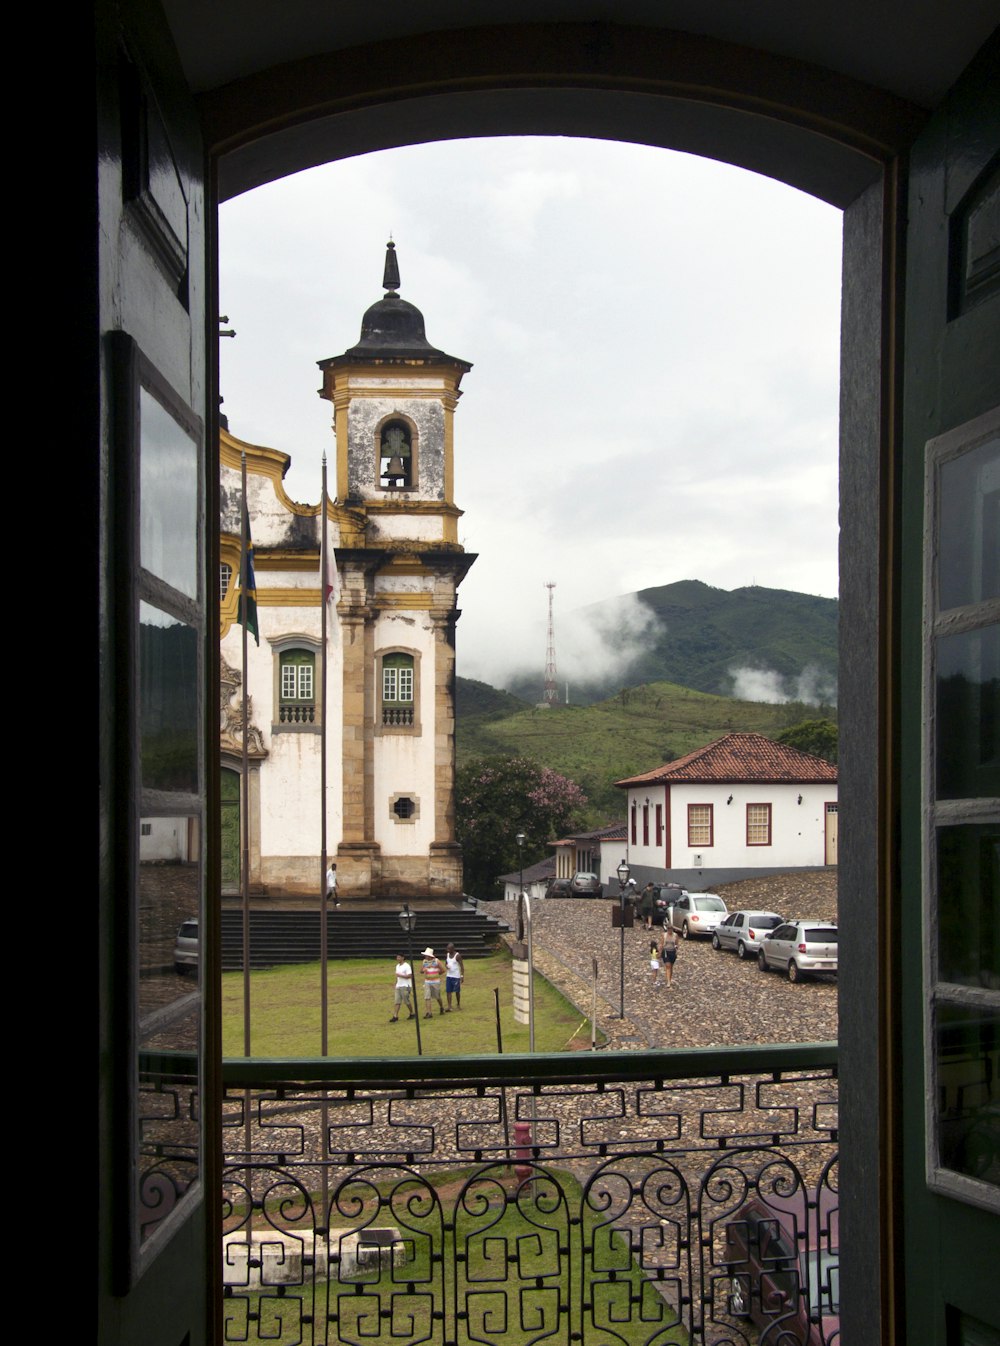 a view of a clock tower through an open door